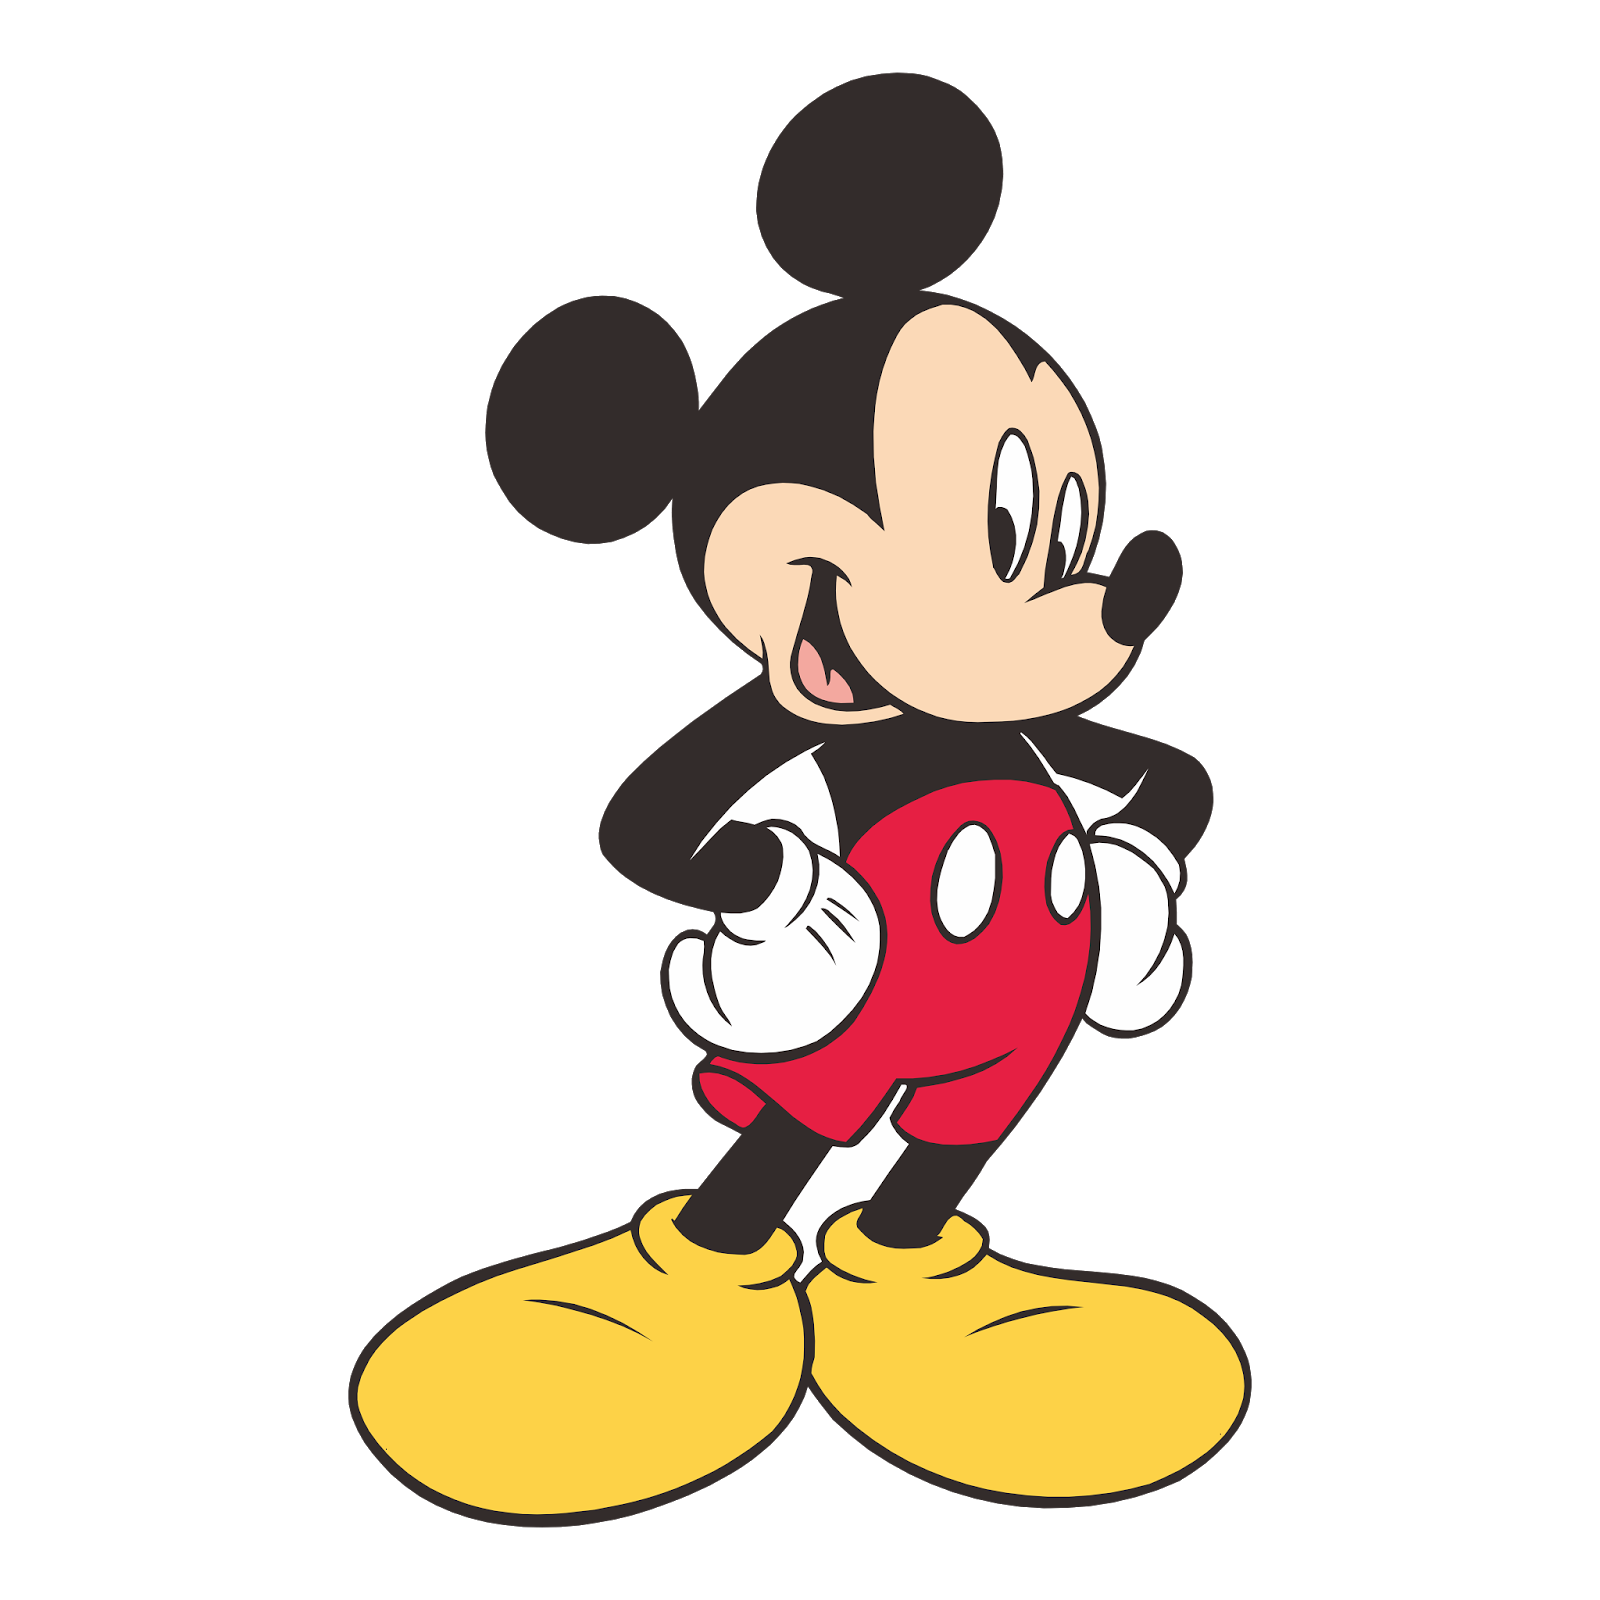 Gambar Ilustrasi Kartun Mickey Mouse Hilustrasi